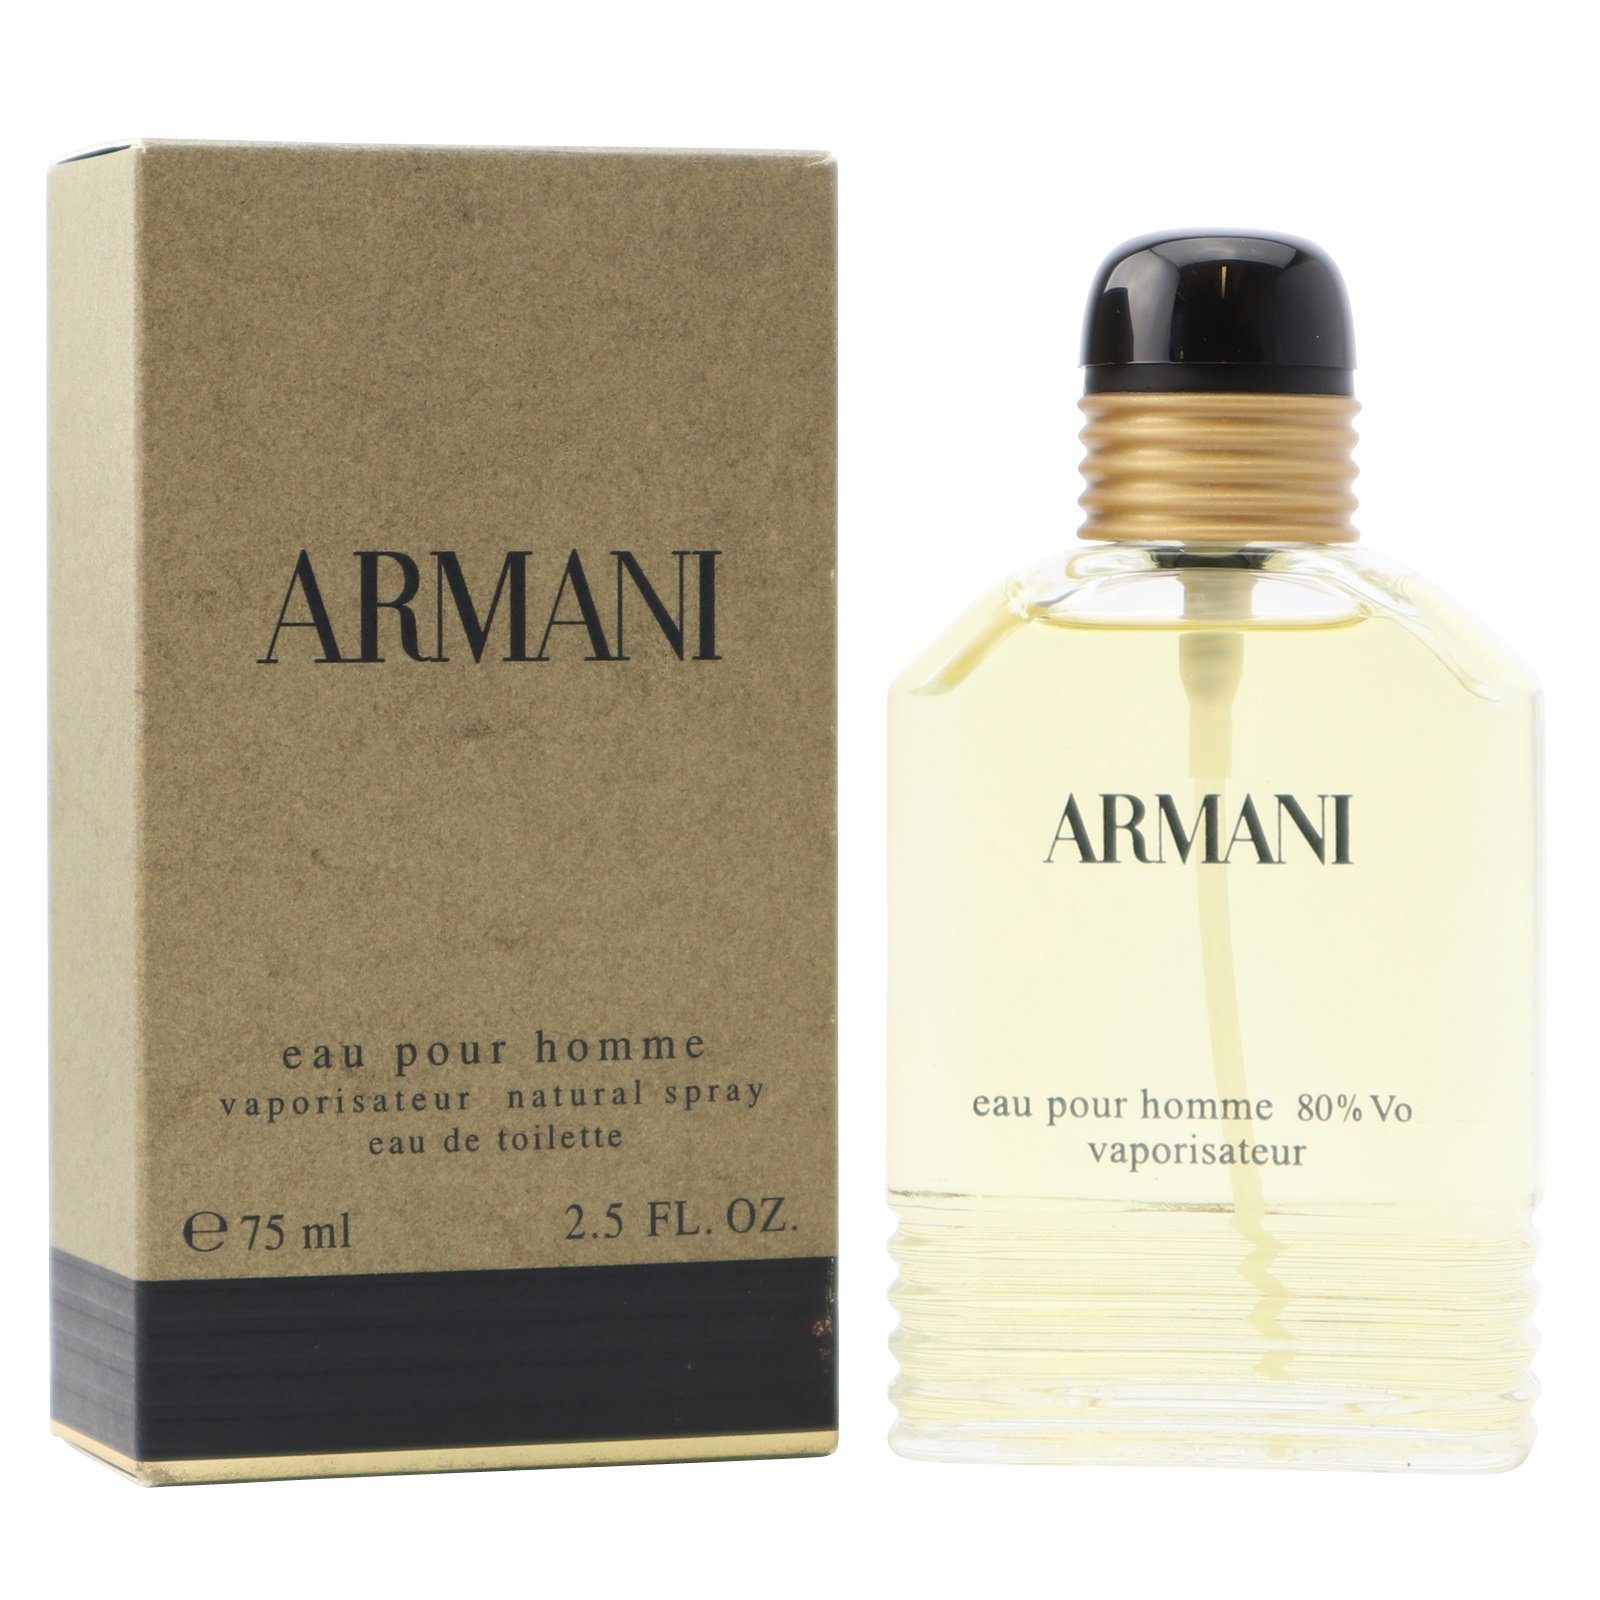 Giorgio Armani Eau de Toilette Armani Eau Pour Homme Eau de Toilette Spray 75 ml | Eau de Toilette